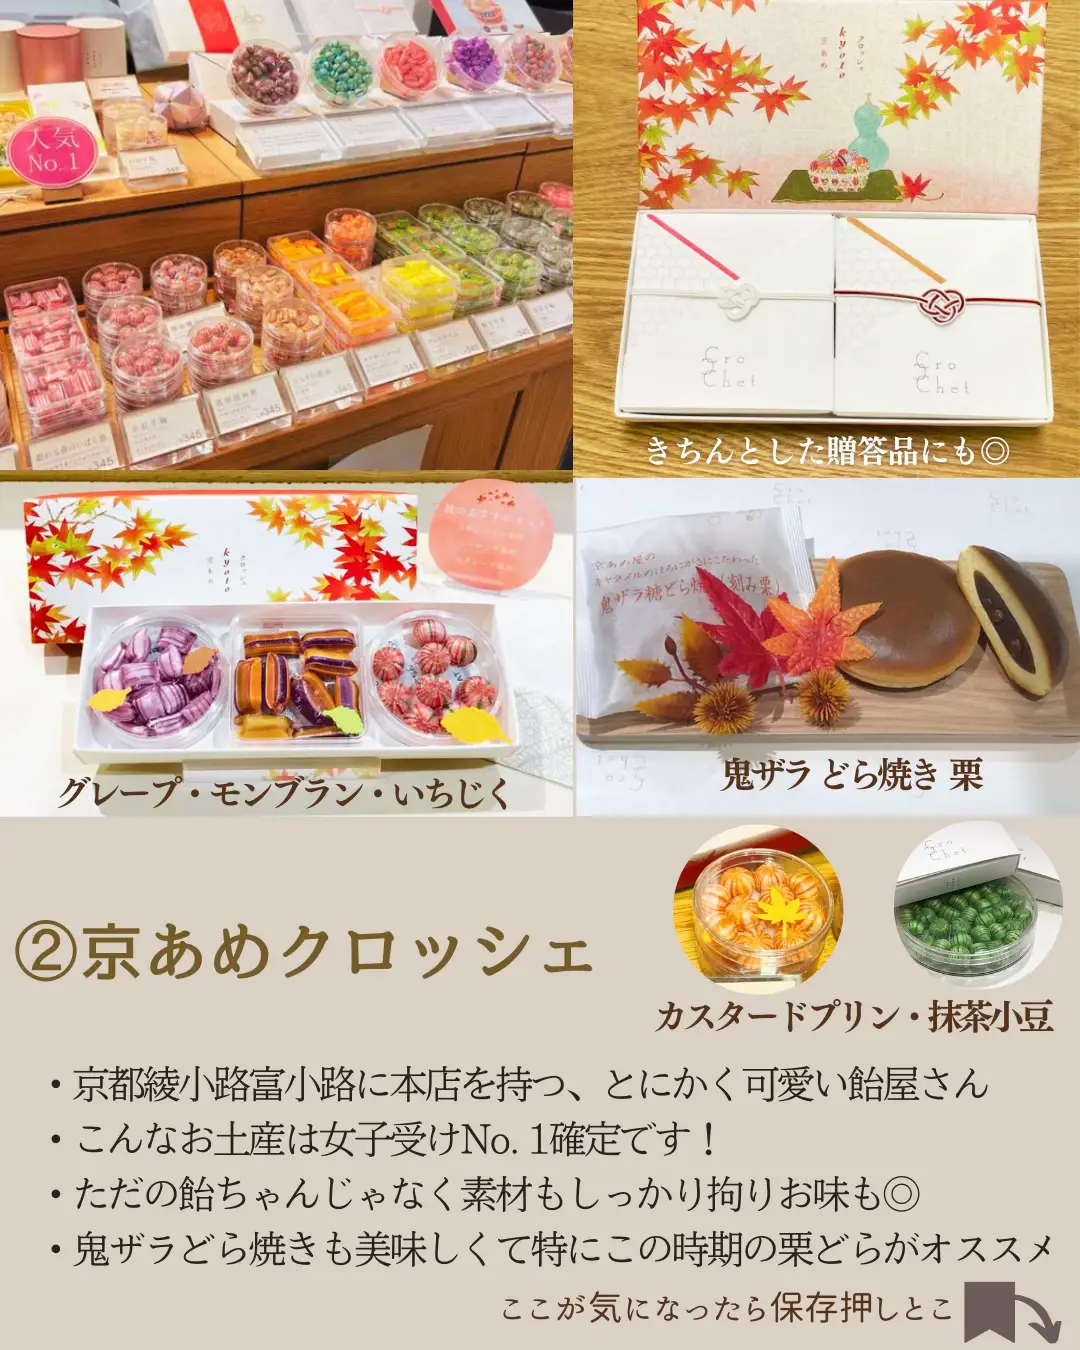 京都 土産 お菓子以外 - Lemon8検索